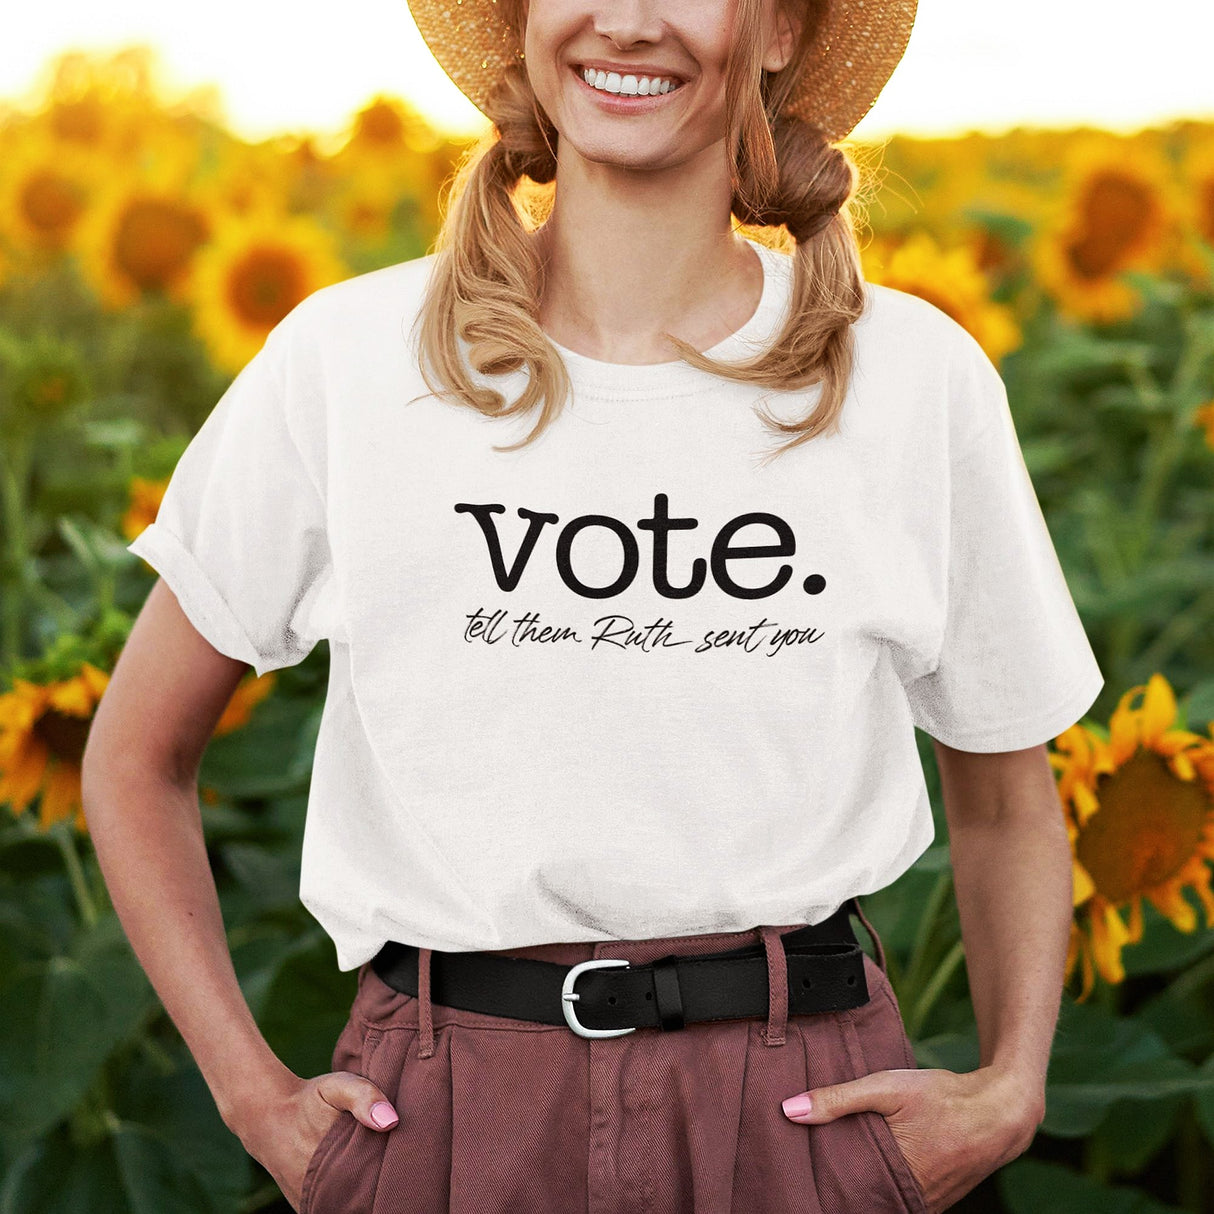 vote-tell-them-ruth-sent-you-politics-tee-government-t-shirt-vote-tee-ruth-t-shirt-justice-tee-1#color_white